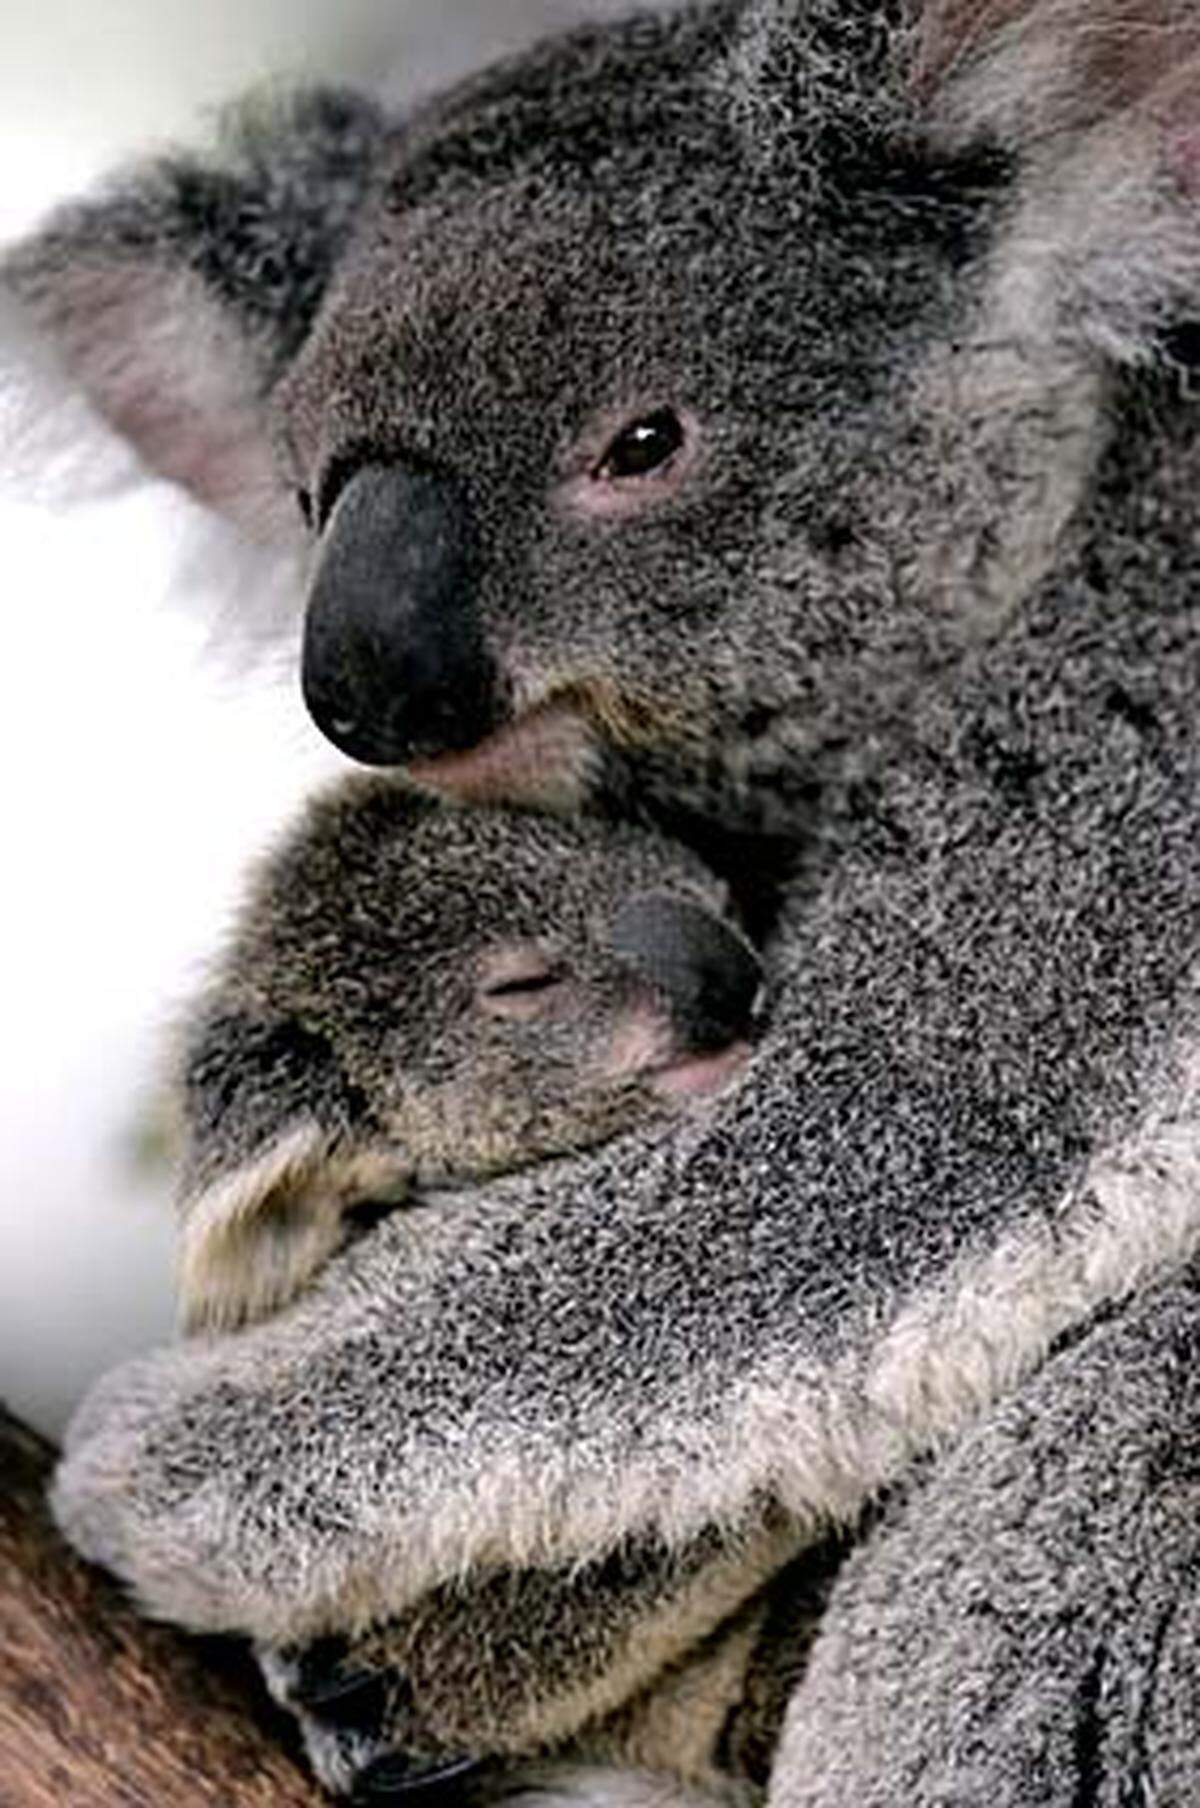 Sie sind das Wahrzeichen Australiens: Koalabären sind ursprünglich in weiten Teilen des Kontinents vorgekommen. Die Zahl der Koalas reduzierte sich erheblich, weil sie wegen ihres Fells gejagt wurden. Mittlerweile sind die Tiere unter Schutz gestellt. Die Zahl der Koalas wird derzeit auf 45.000 bis 80.000 geschätzt. Auf Kangaroo Island, wo früher keine Koalas heimisch waren, wurden ganze Kolonien angesiedelt.